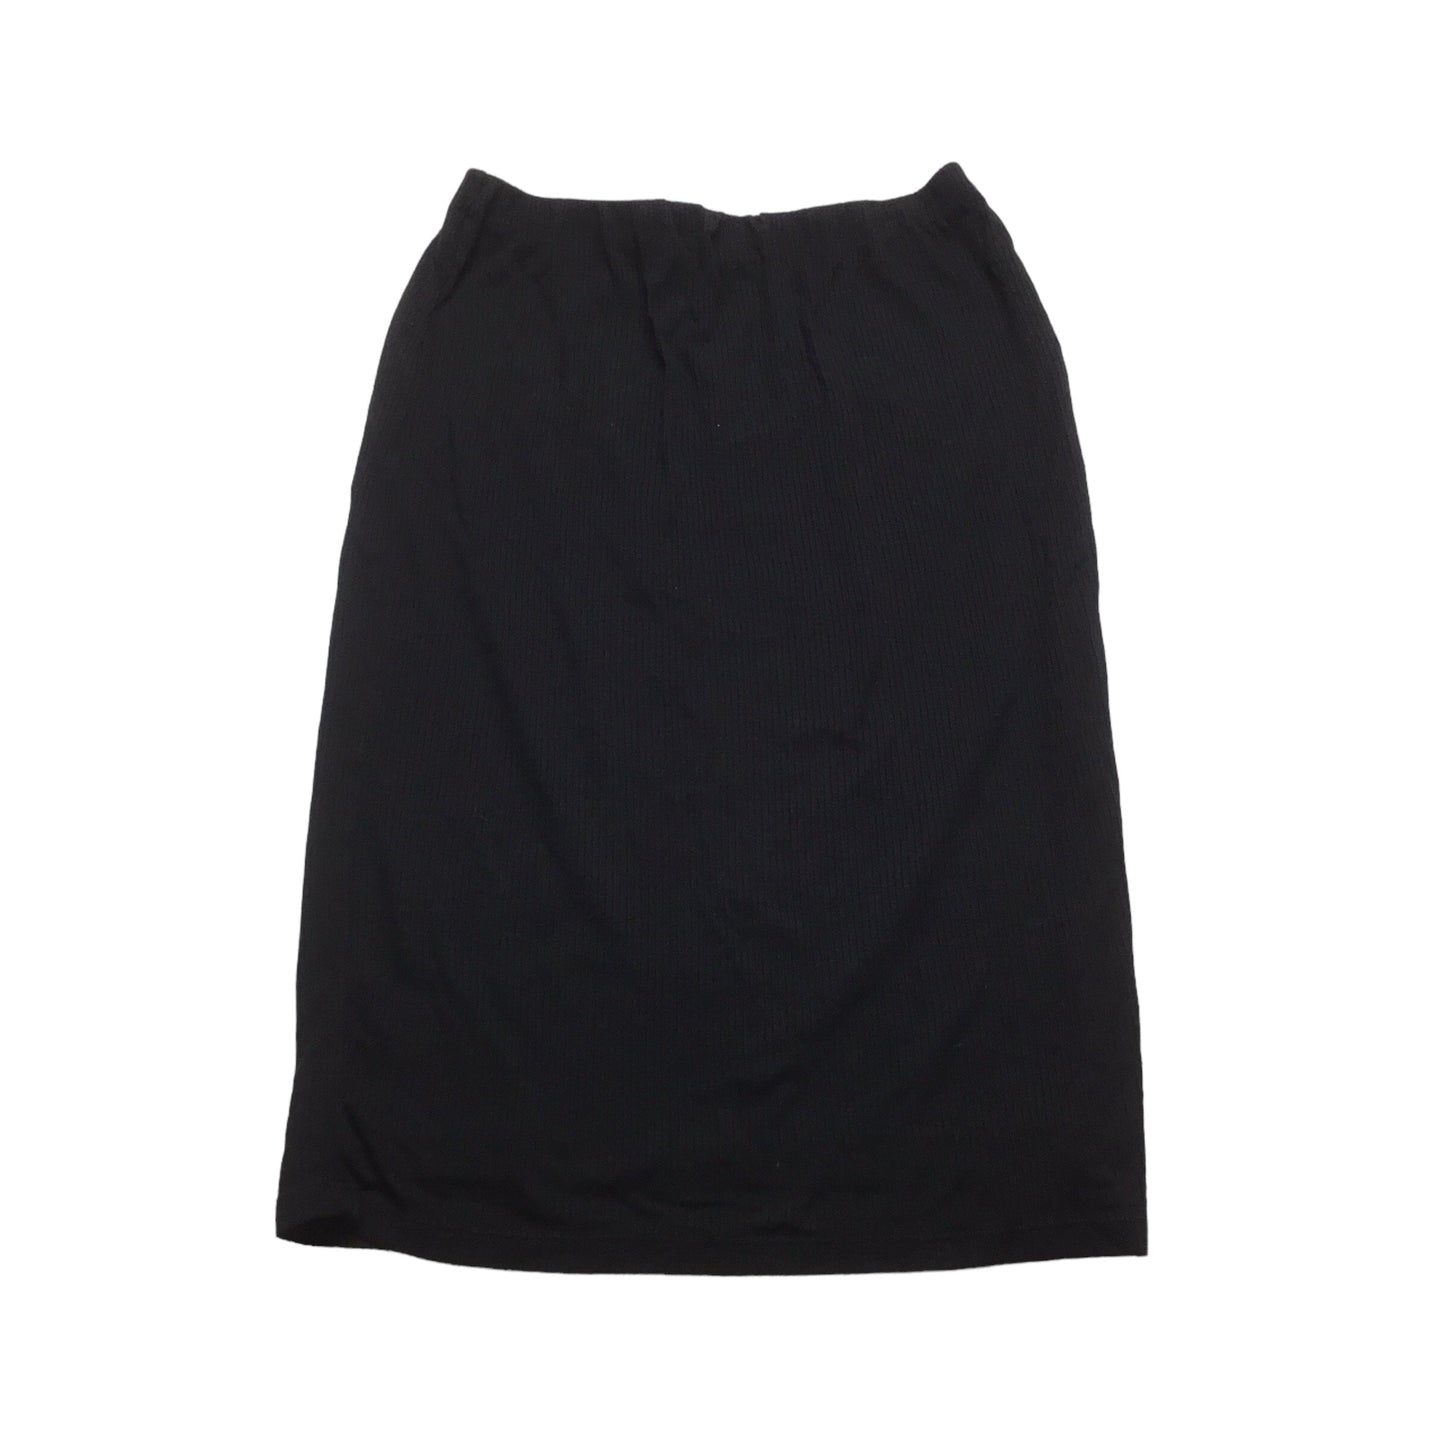 Black Skirt Midi Bobeau, Size S